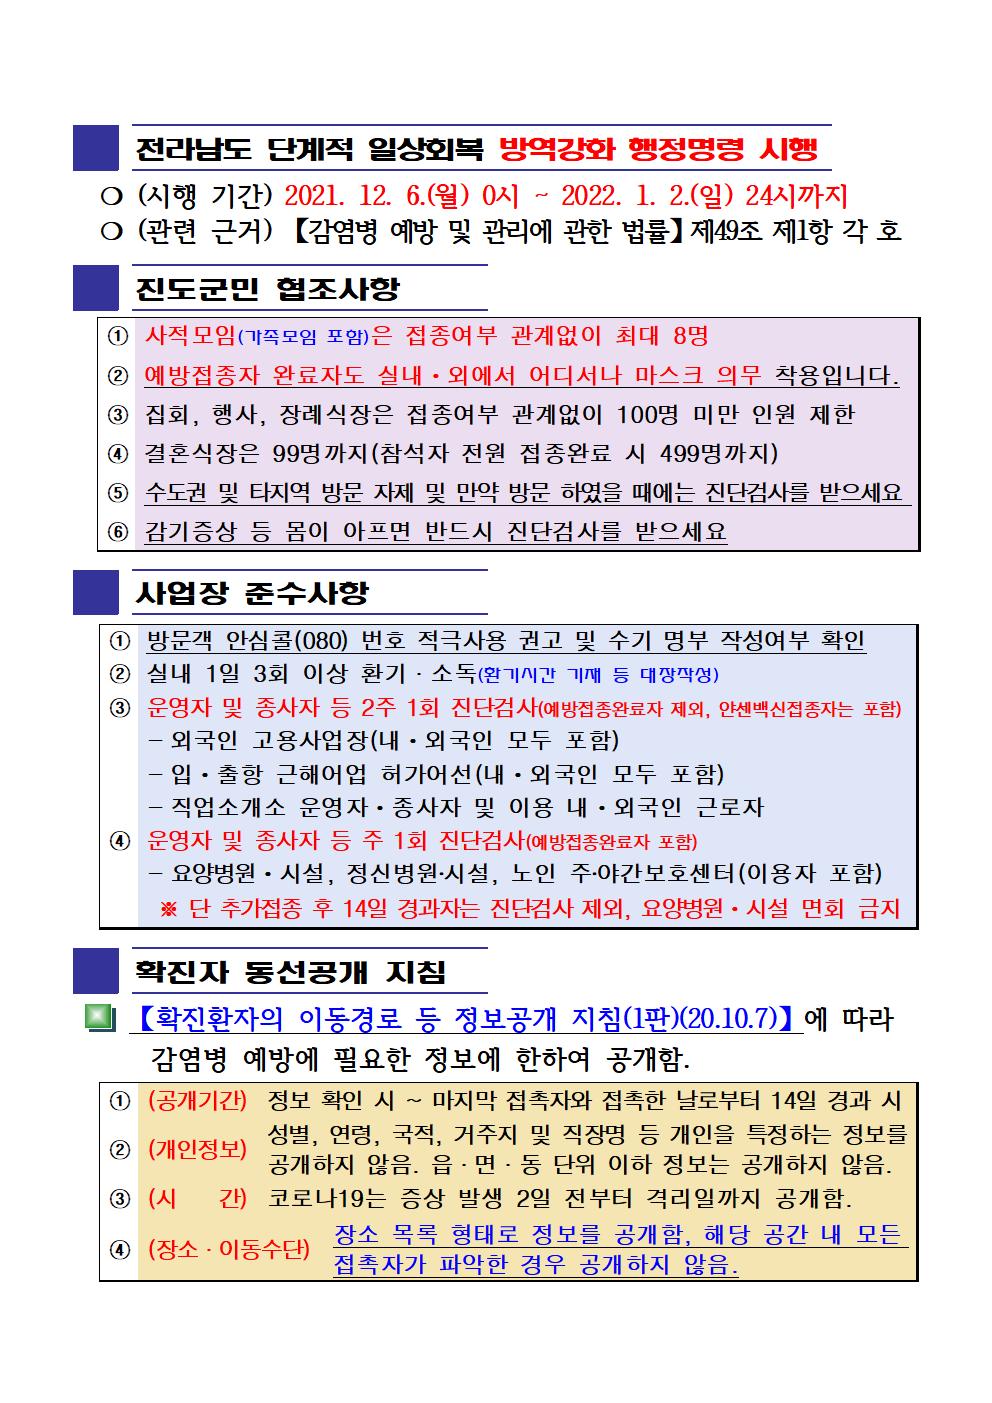 2021년 코로나 19 대응 일일상황보고(12월 11일 24시 기준) 첨부#2